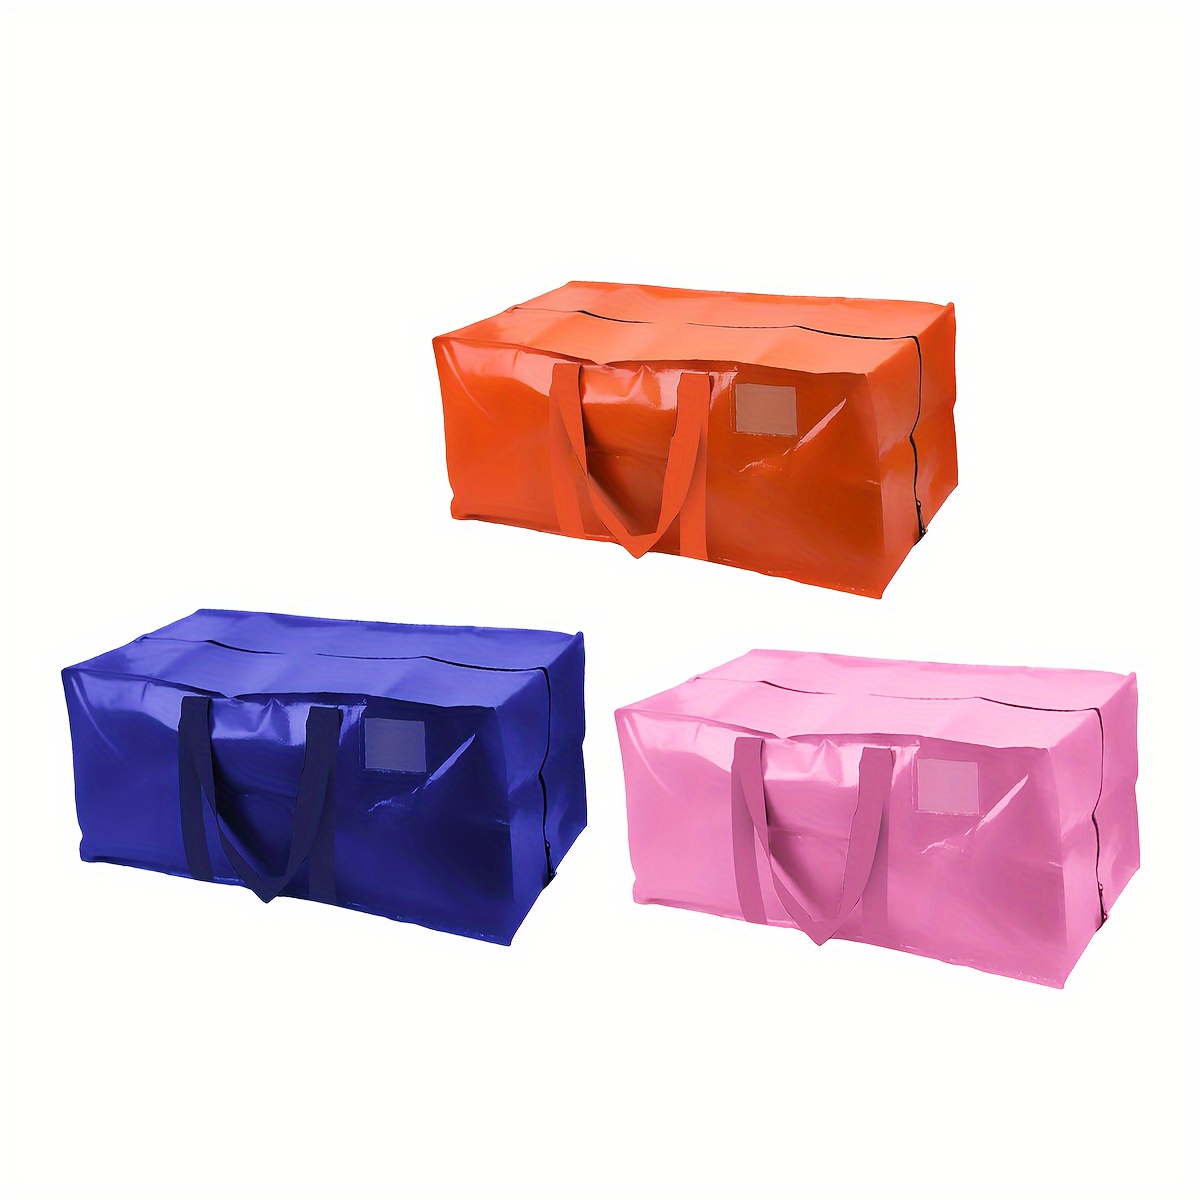  Bolsas de mudanza resistentes extra grandes, paquete de 6 cajas  para mudanzas grandes y XL, bolsas de almacenamiento en lugar de cajas para  mudanzas, medianas y grandes, bolsas de almacenamiento de